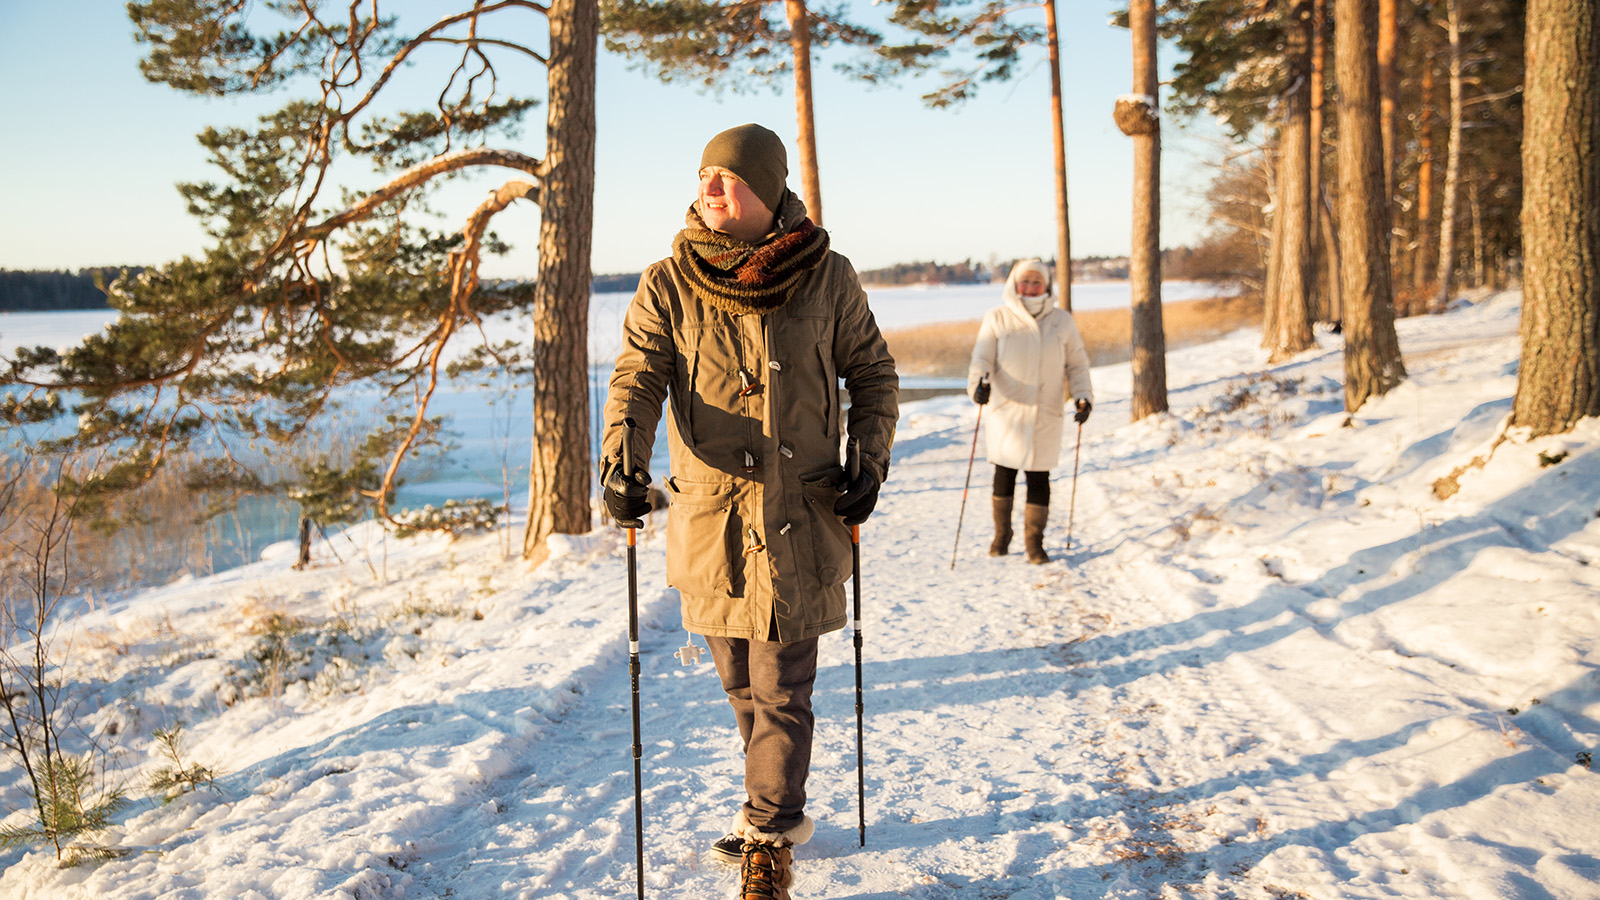 Mann og kvinne går en tur i skogen om vinter